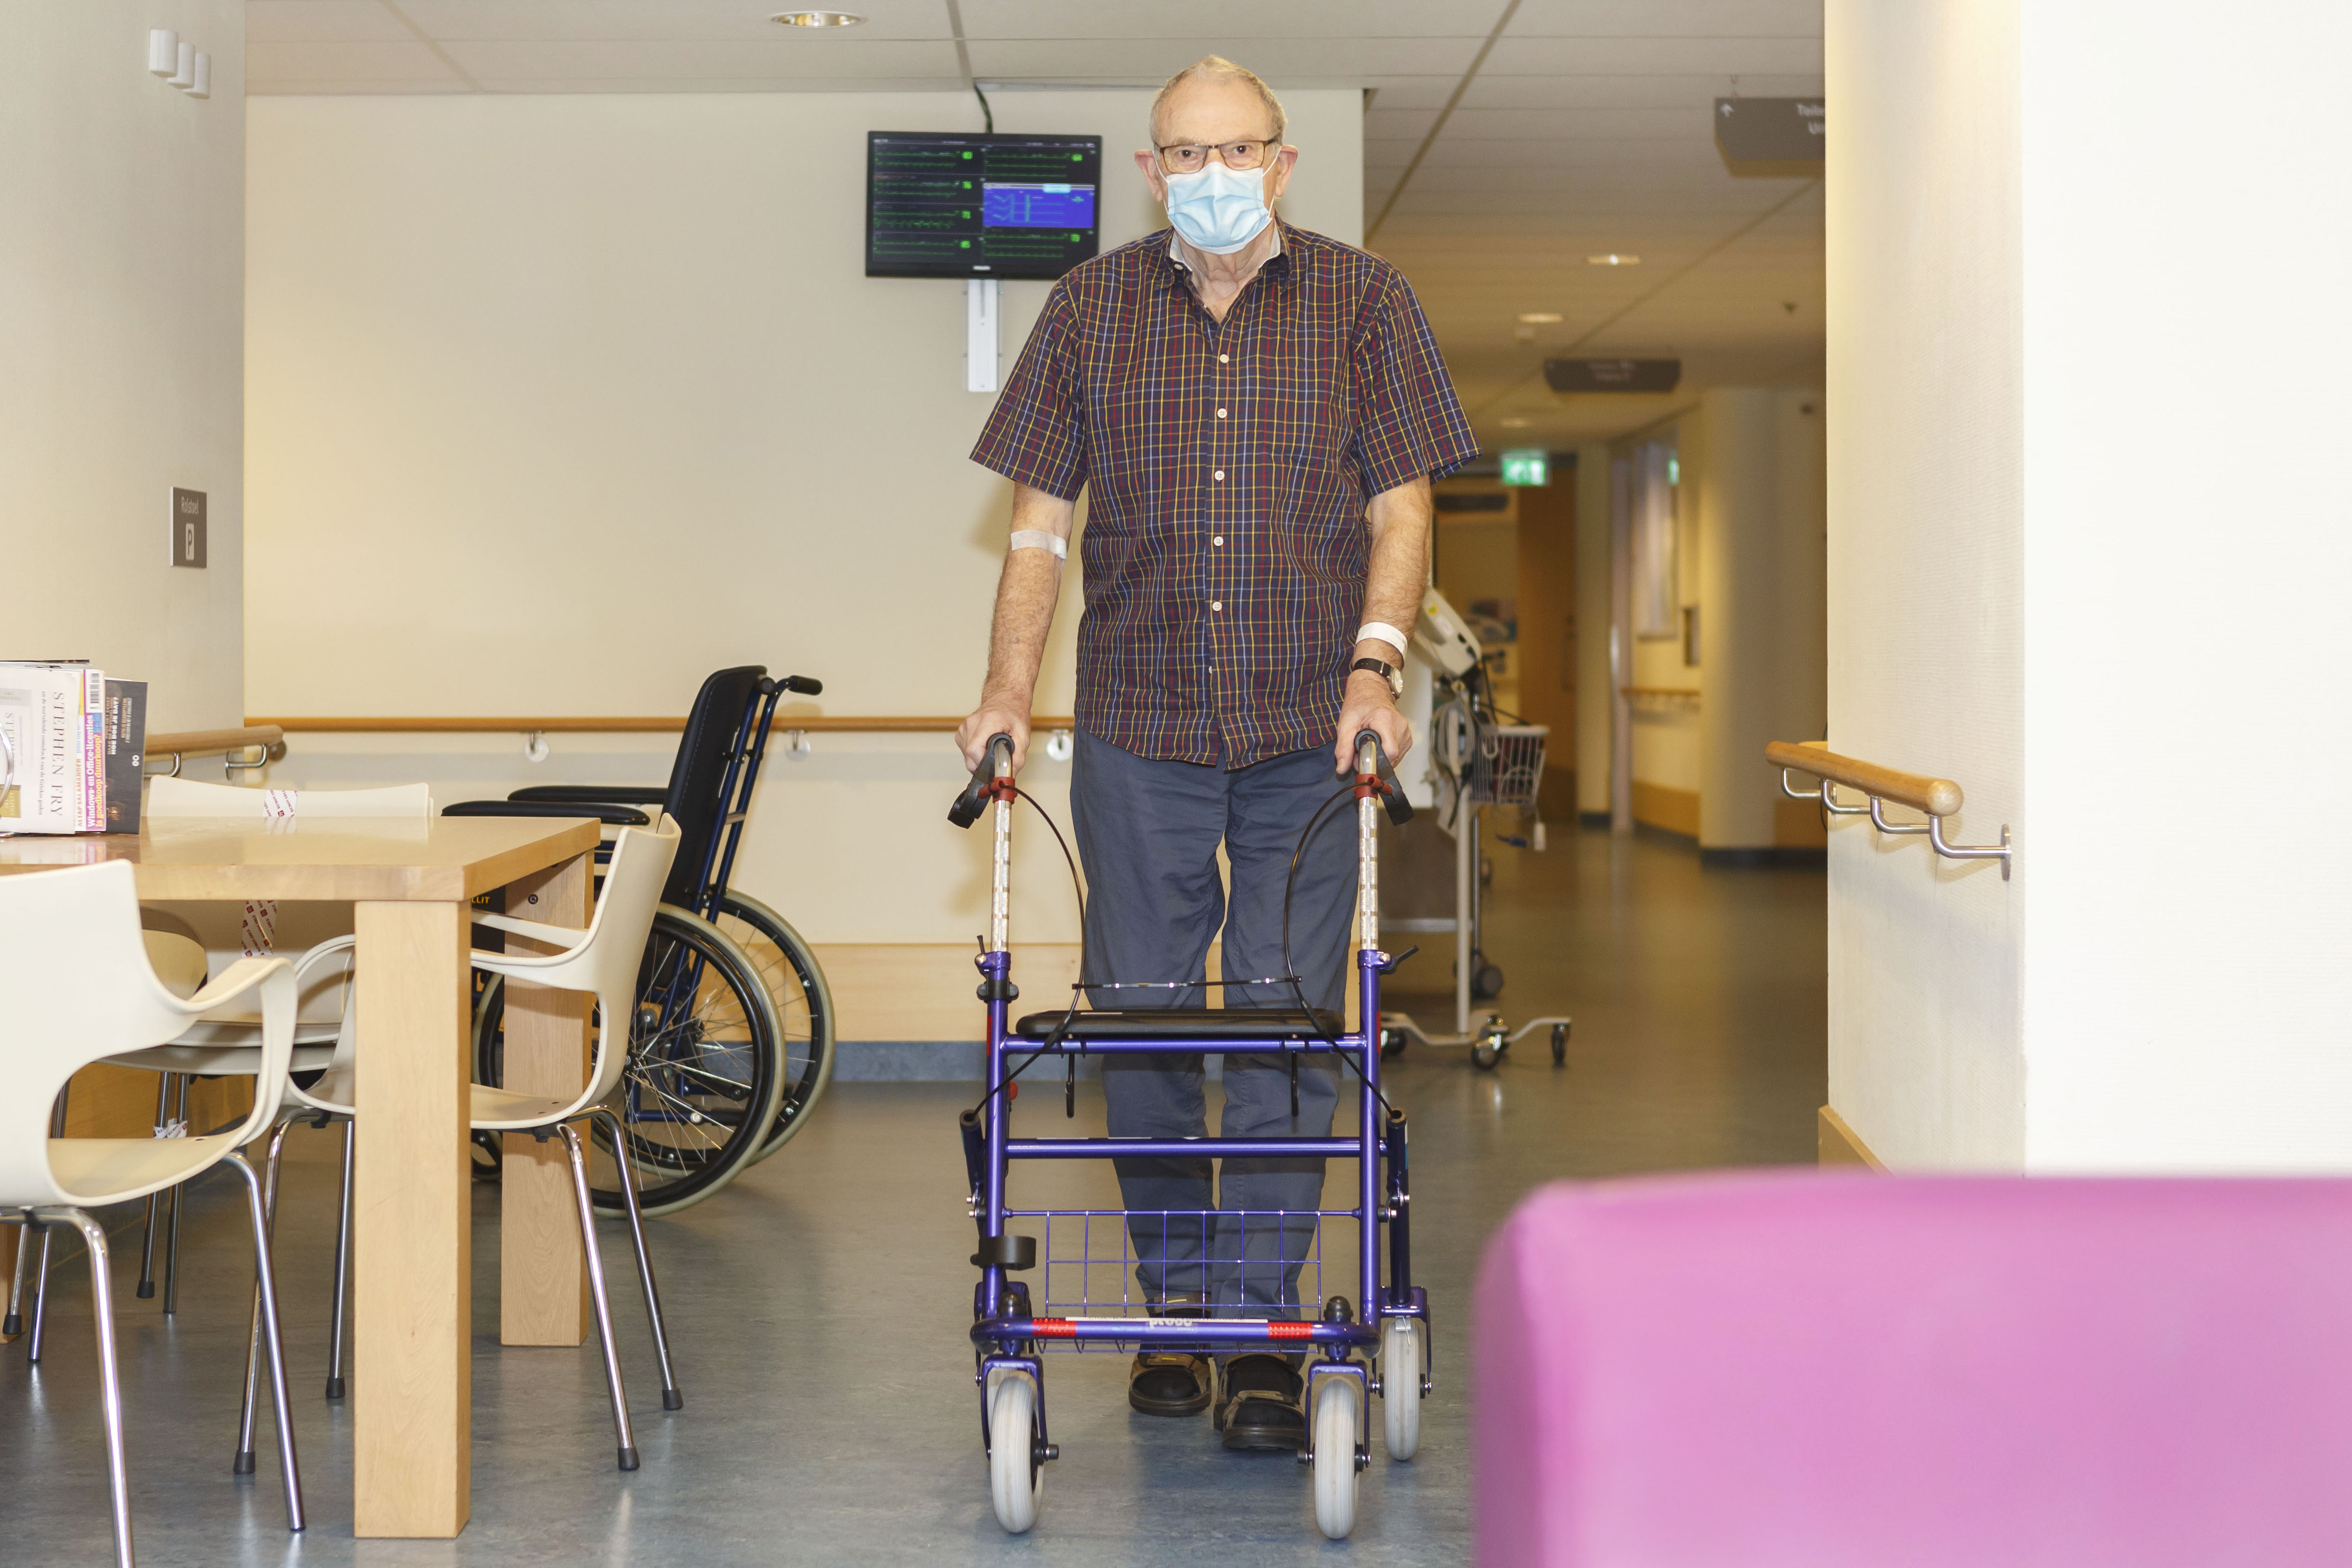 Oudere meneer in beweging in de hal van het ziekenhuis